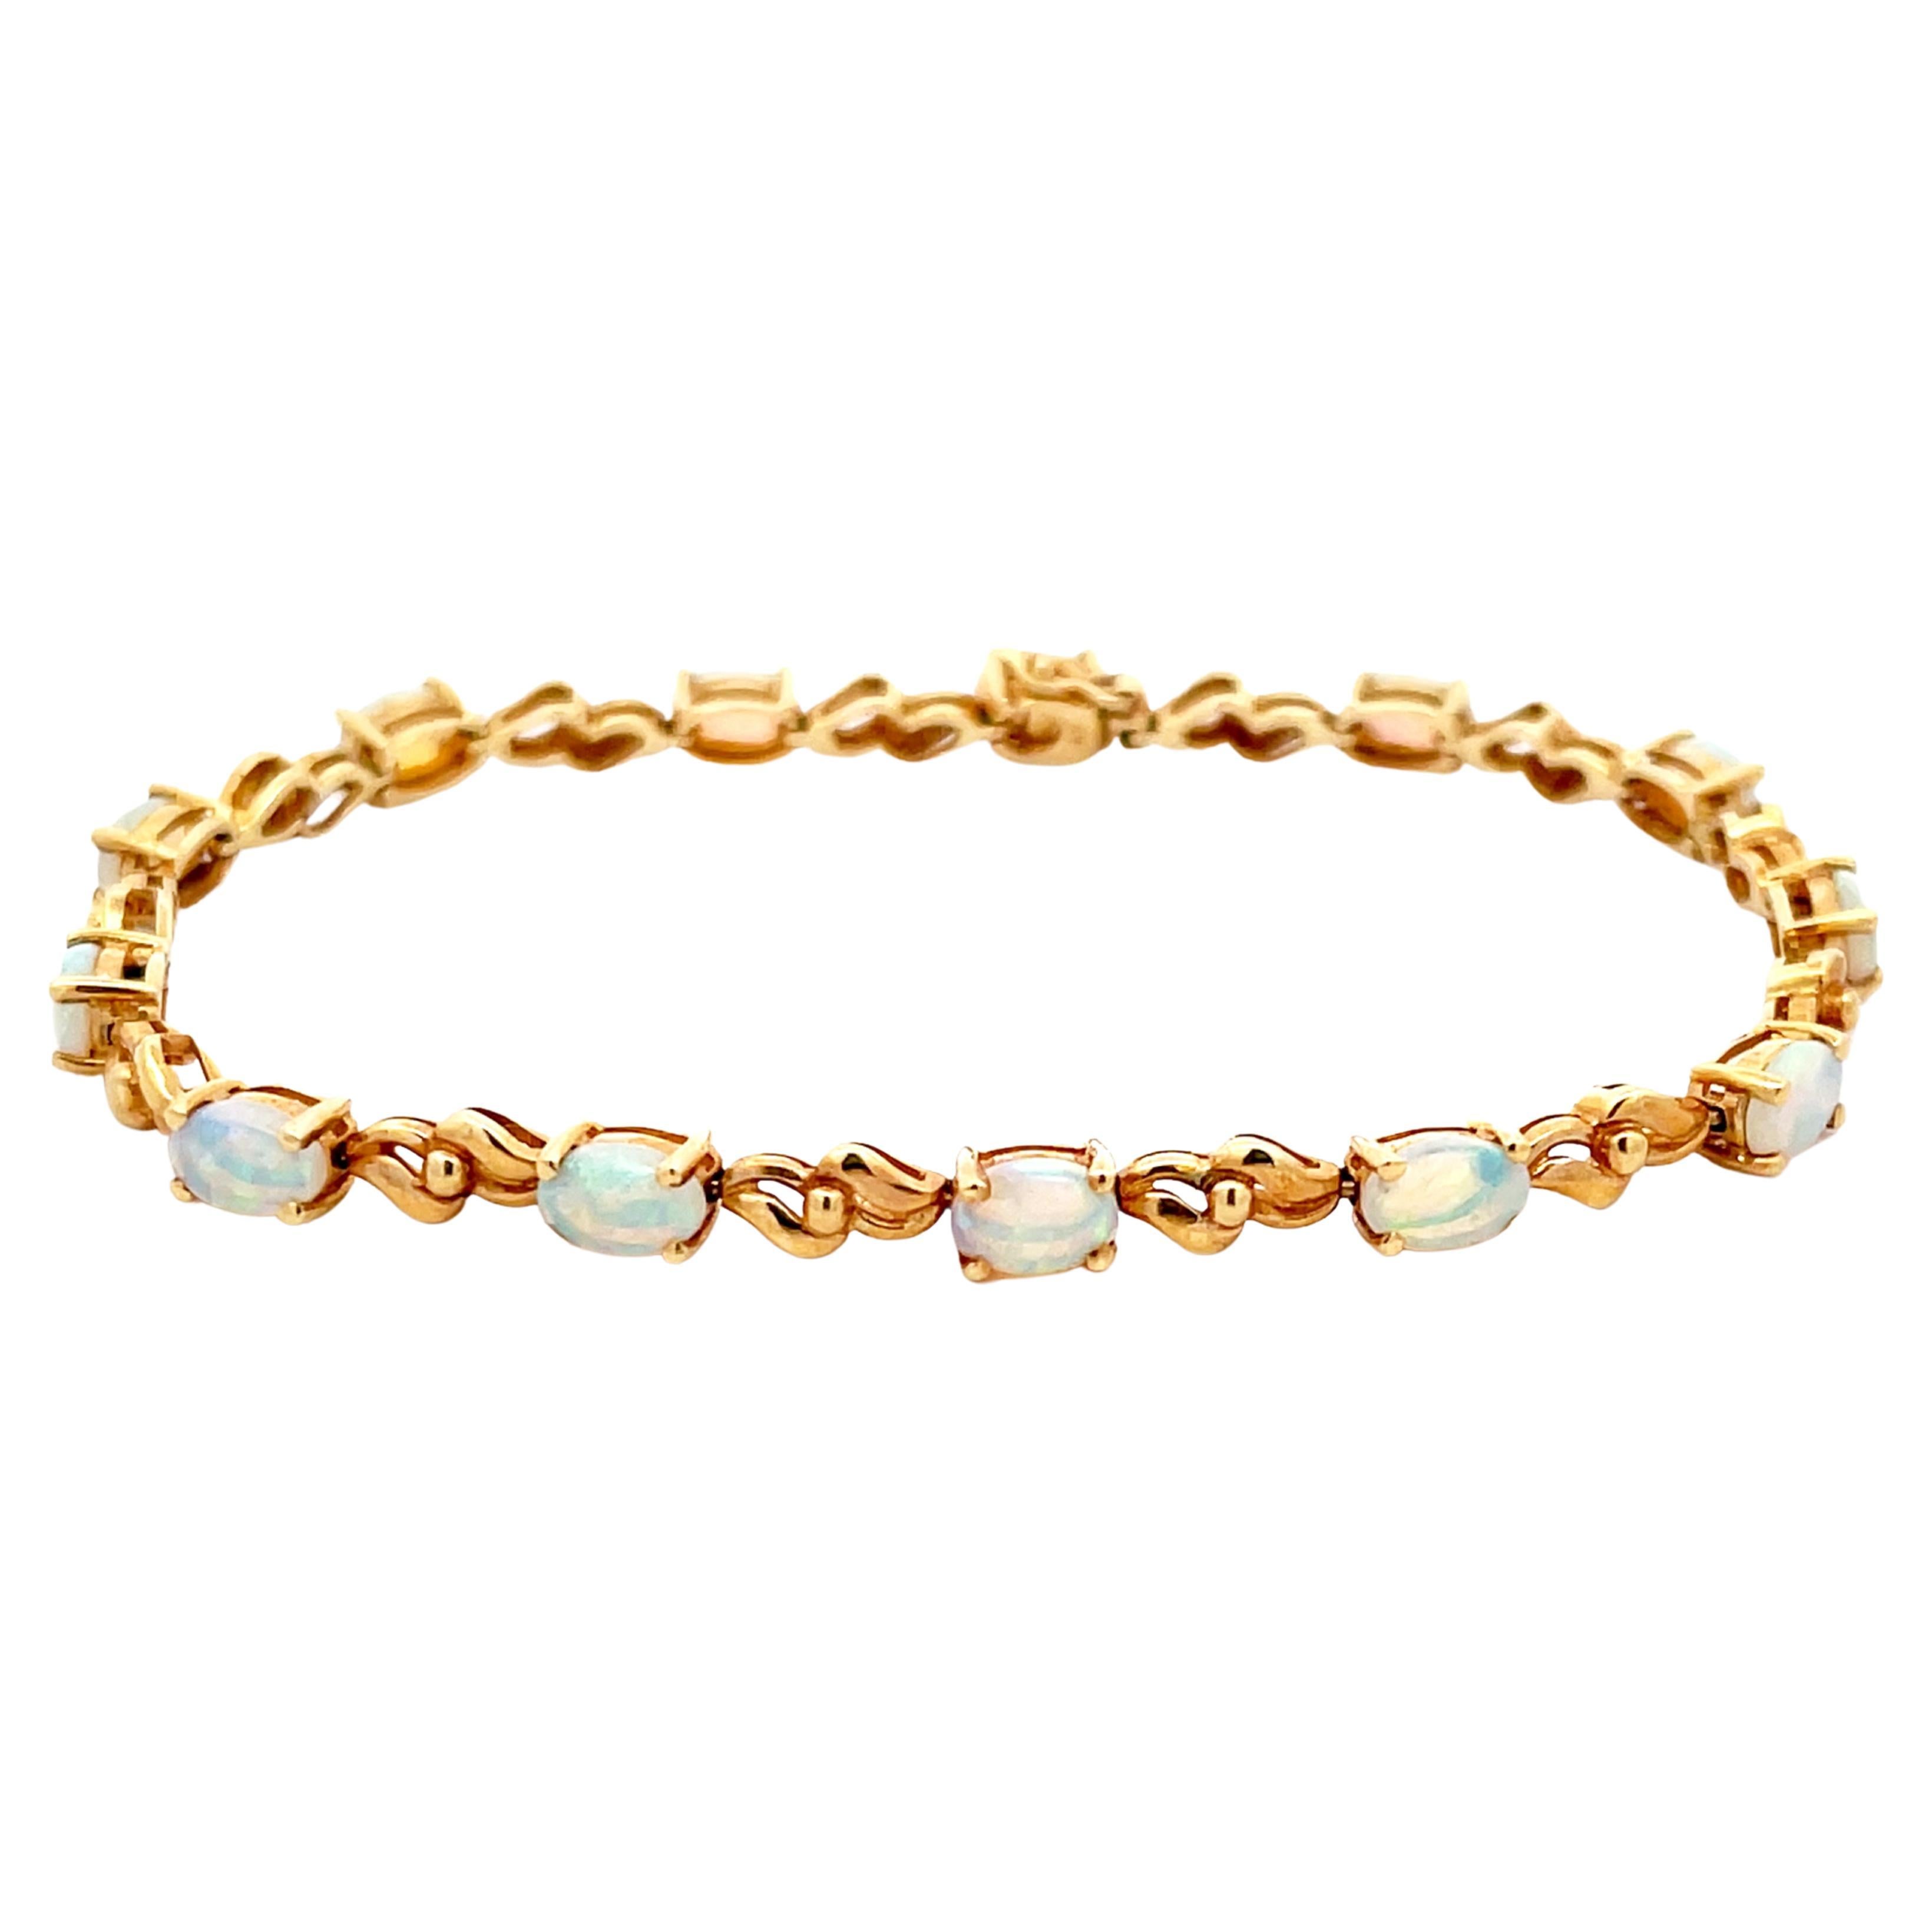  Elegant 14k solid gold bracelet with opal pink Clover